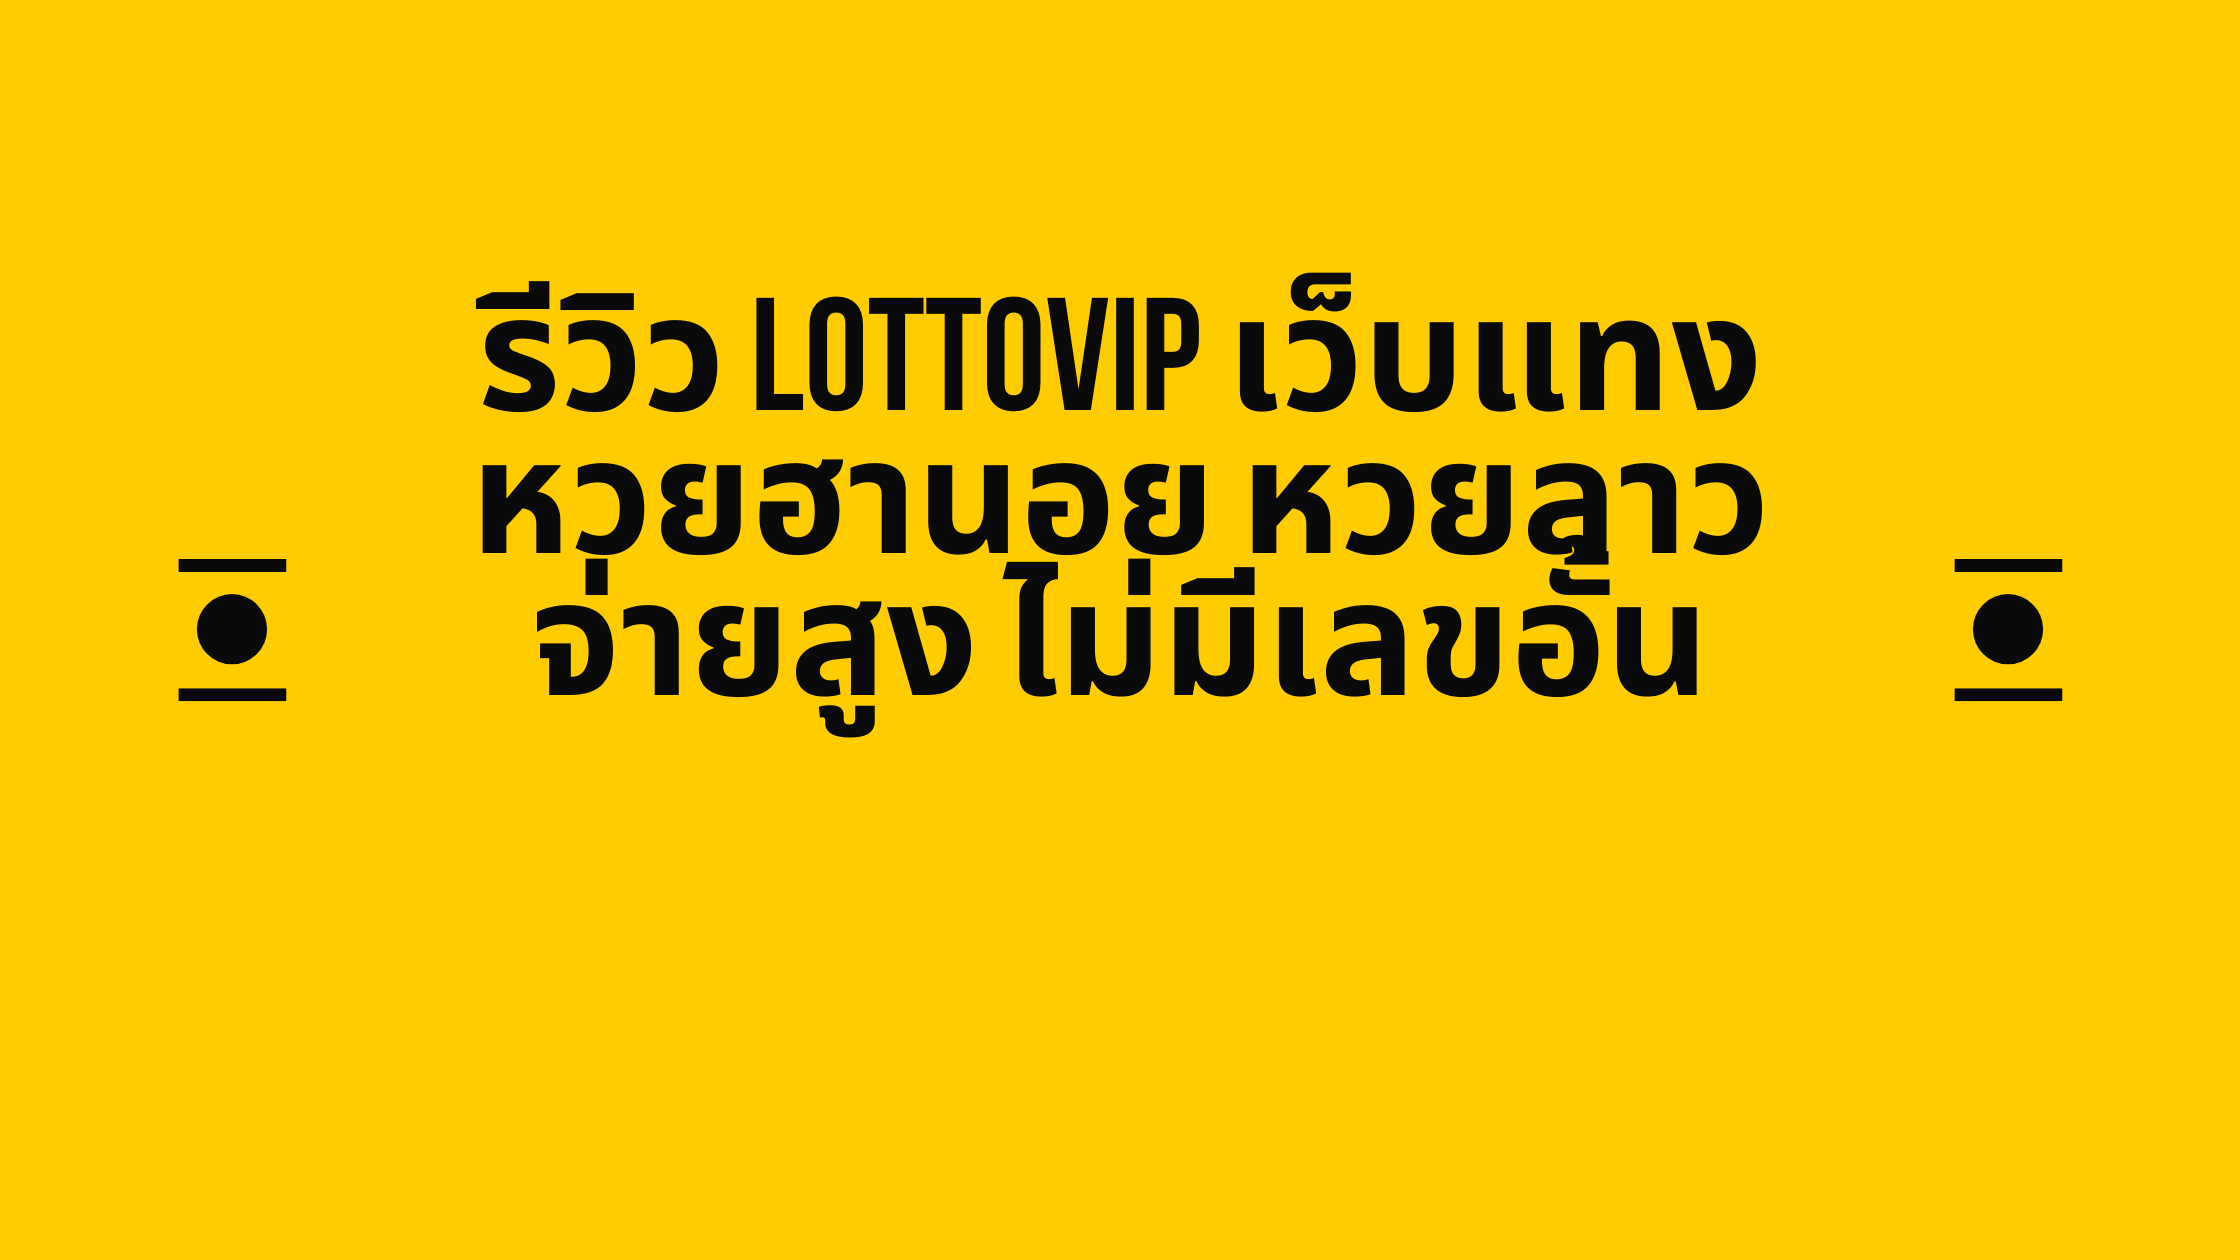 รีวิว LottoVIP เว็บแทงหวยฮานอย หวยลาว จ่ายสูง ไม่มีเลขอั้น